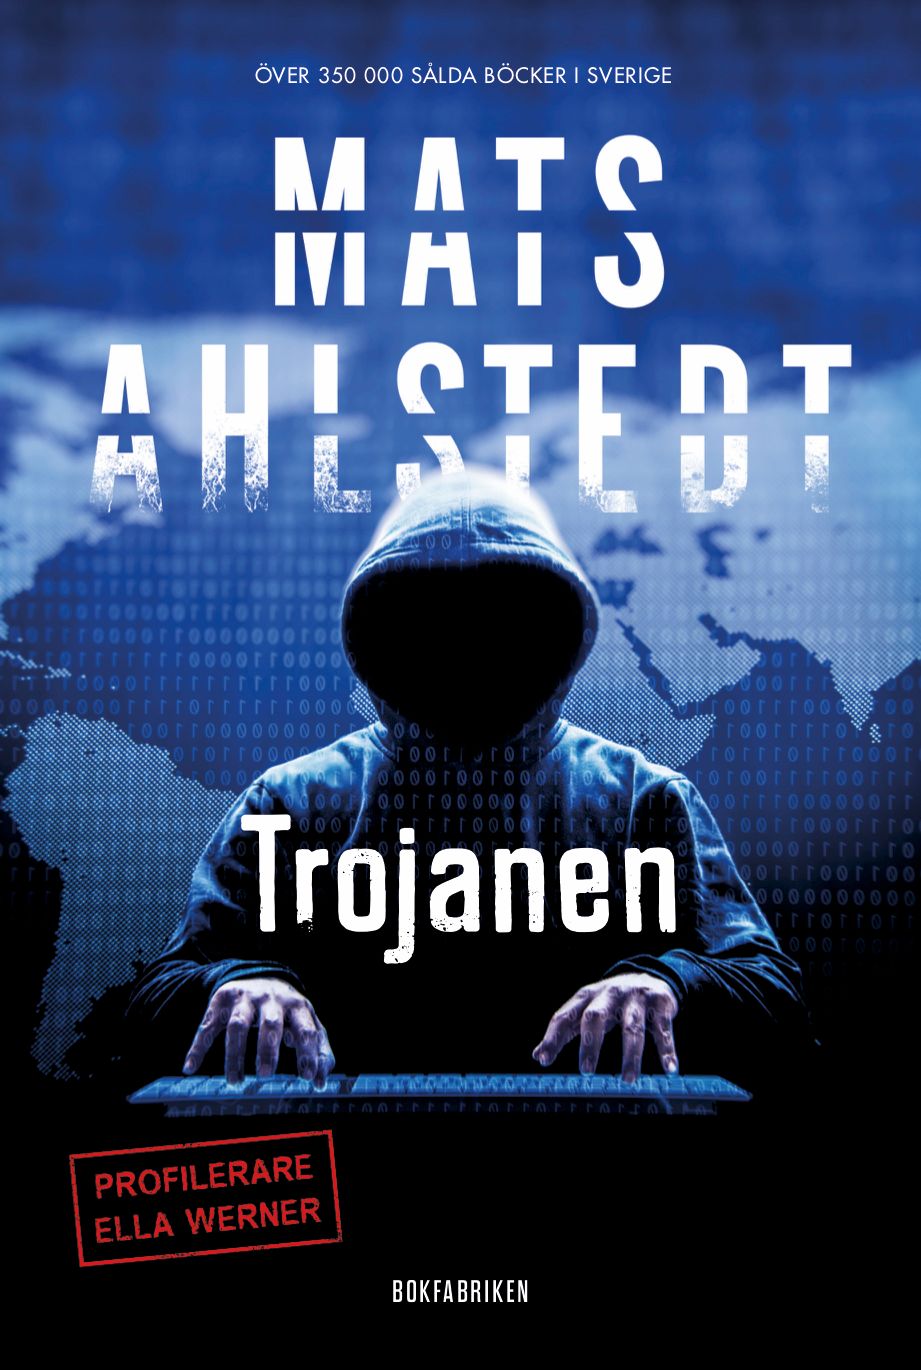 Trojanen, eBook by Mats Ahlstedt